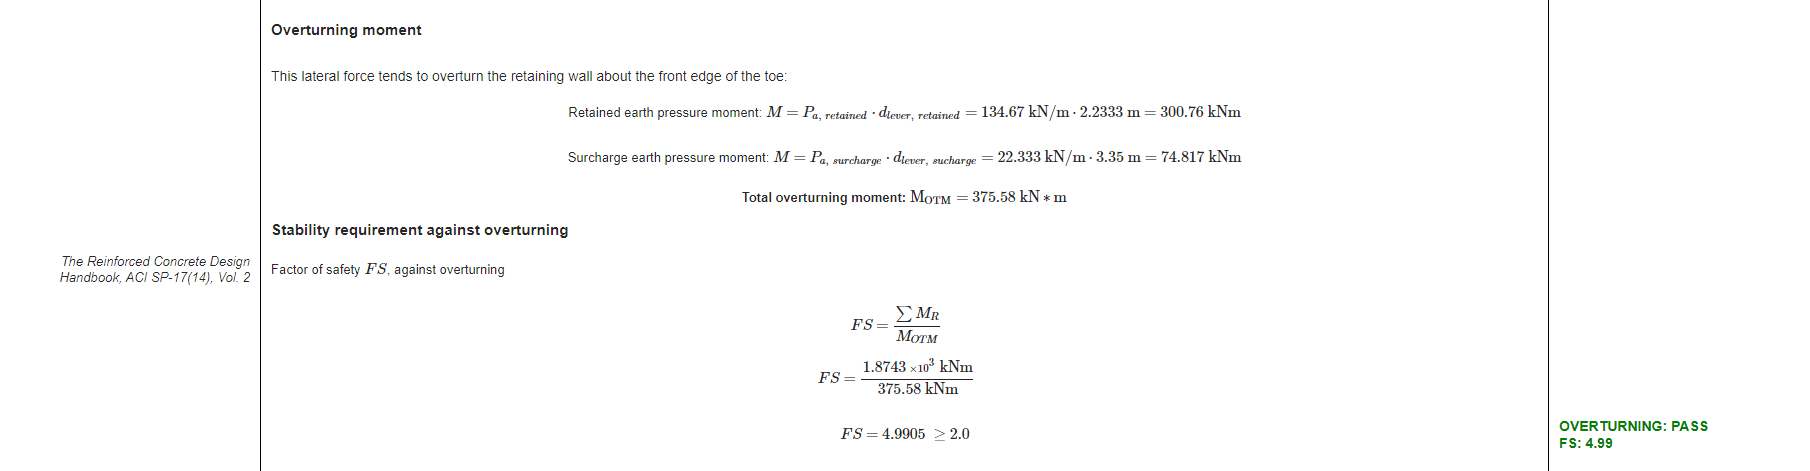 Captura de tela do relatório detalhado para cálculos de verificação de estabilidade de um muro de contenção de concreto